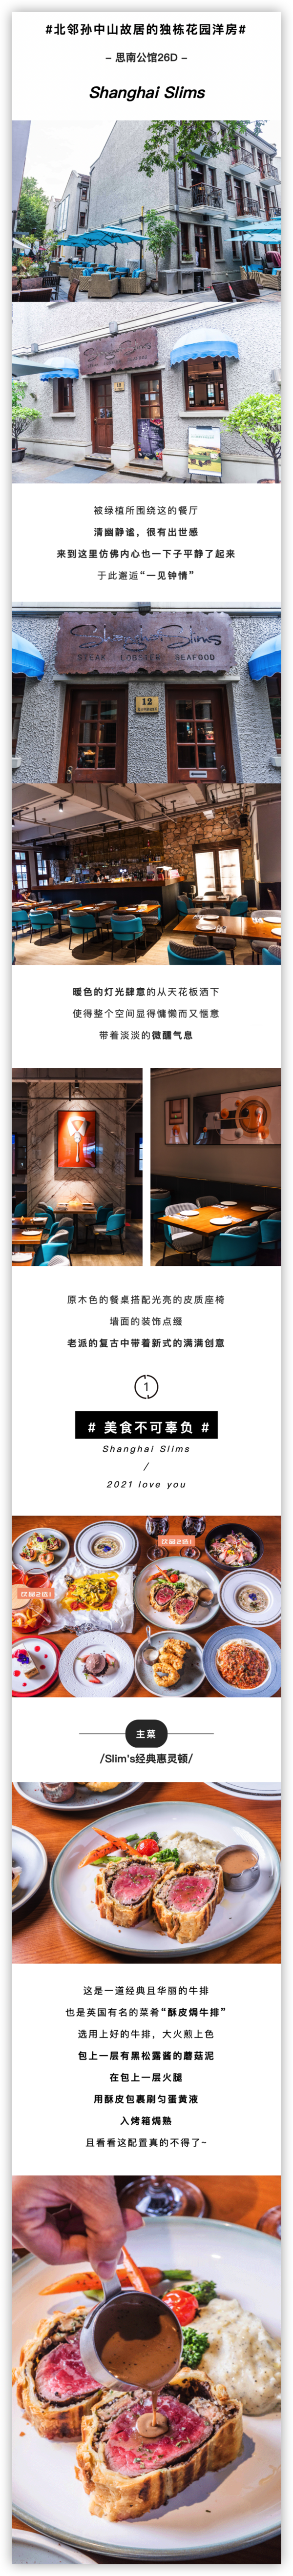 上海思南公馆 Shanghai Slims惠灵顿牛排双人套餐